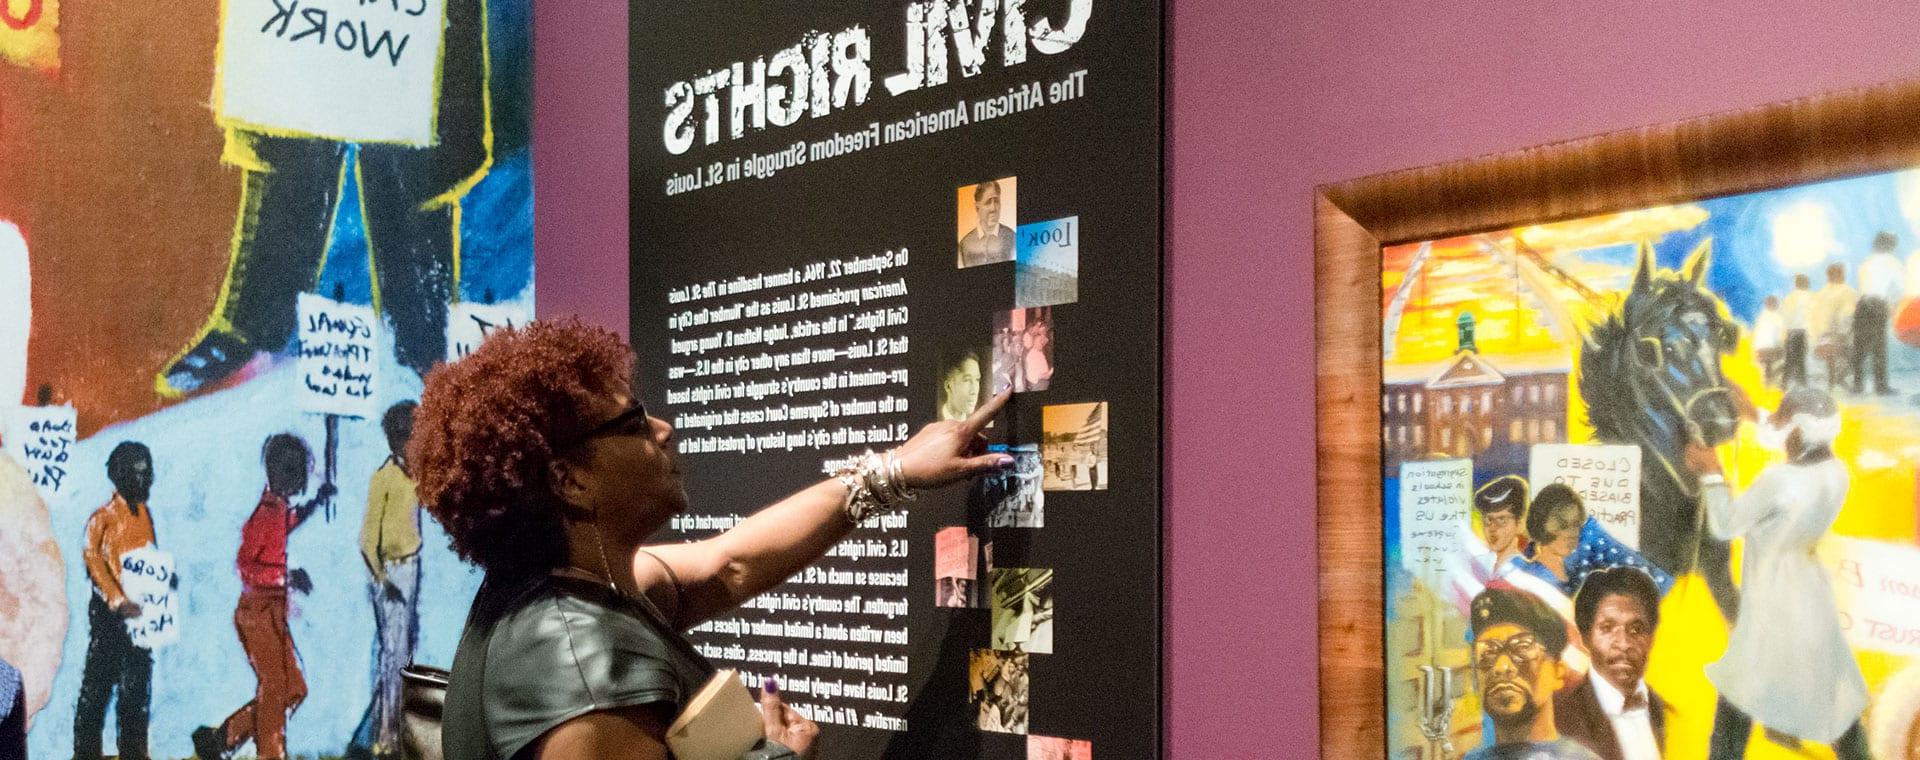 玛丽维尔赞助密苏里历史博物馆的民权展览